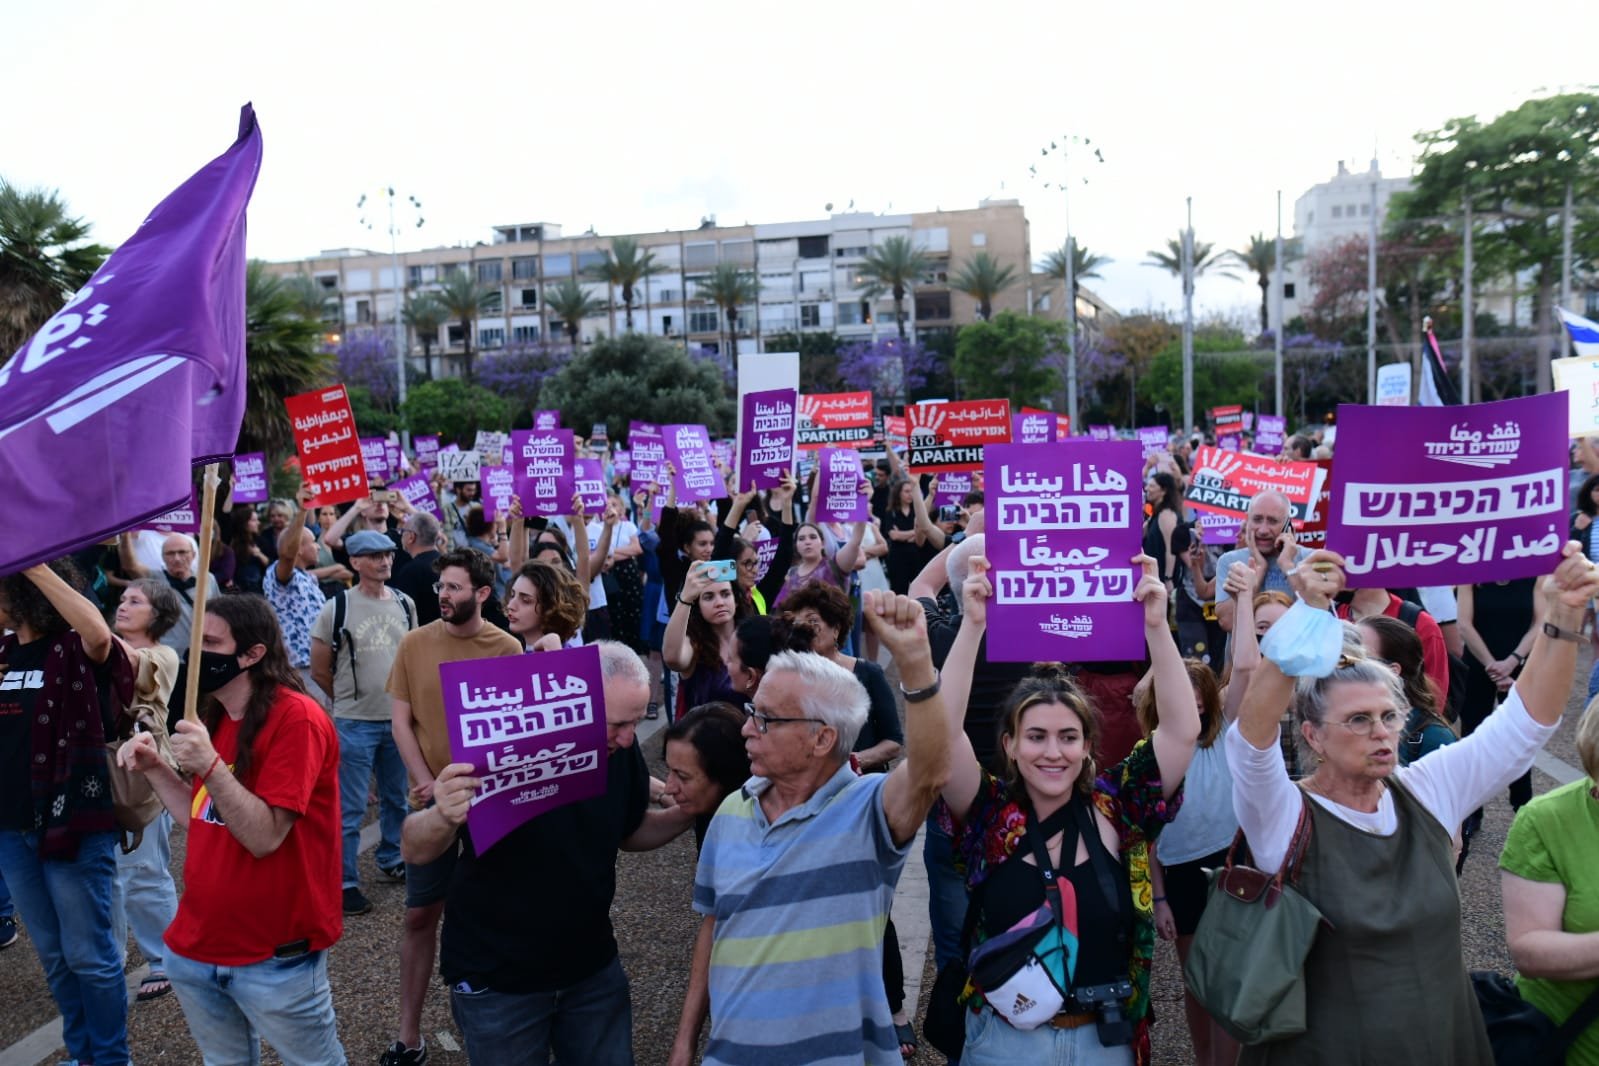 أصداء واسعة للمظاهرة الضخمة من أجل السلام التي أقيمت بمبادرة "نقف معًا" في تل أبيب-4